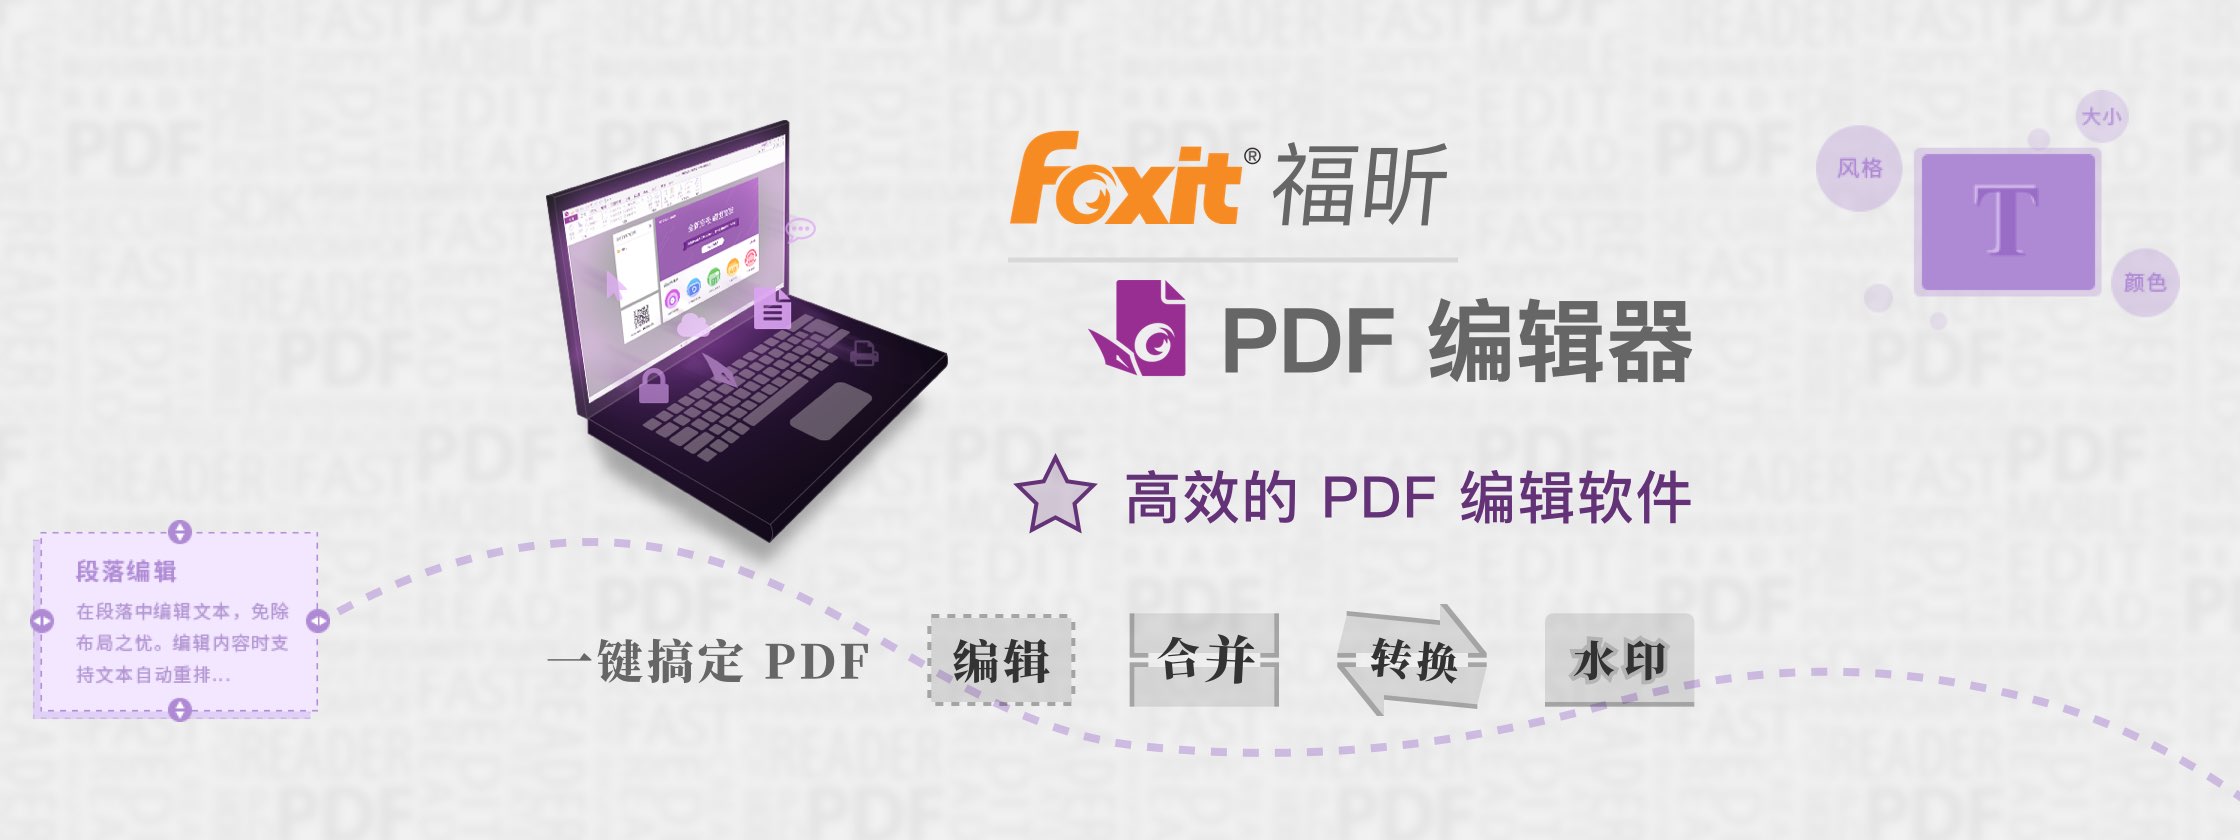 福昕PDF编辑器，高效的 PDF 编辑软件，一键搞定 PDF 编辑、合并、转换、水印